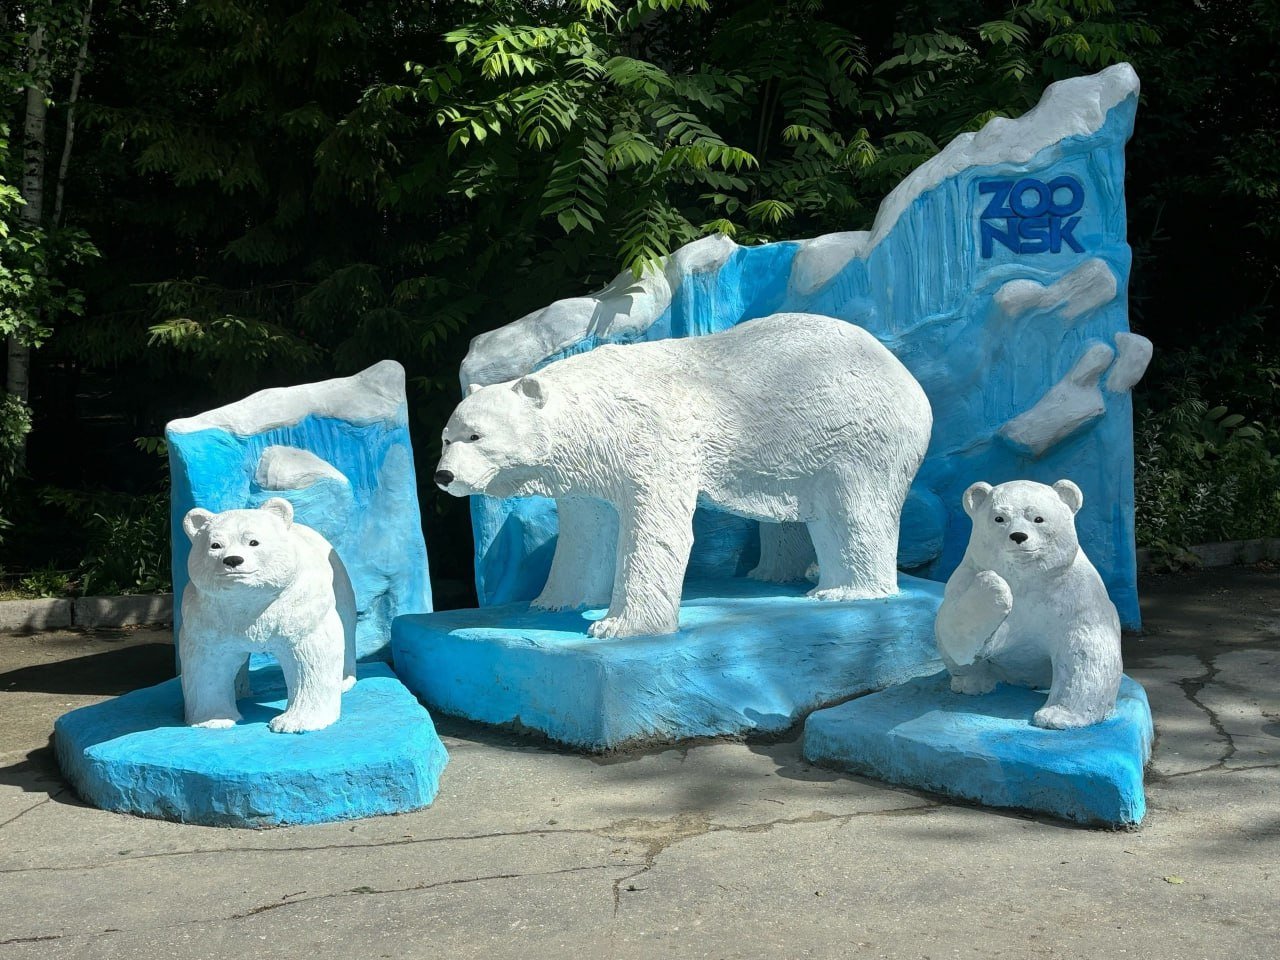 Мы нсо  ‍  Новая фотозона появилась в зоопарке   Расположена она рядом с вольером белых медведей. Здесь установили скульптуры этих животных: медведица и два медвежонка «плывут» на импровизированных льдинах.    novosibirsk_zoo  Мы нсо @